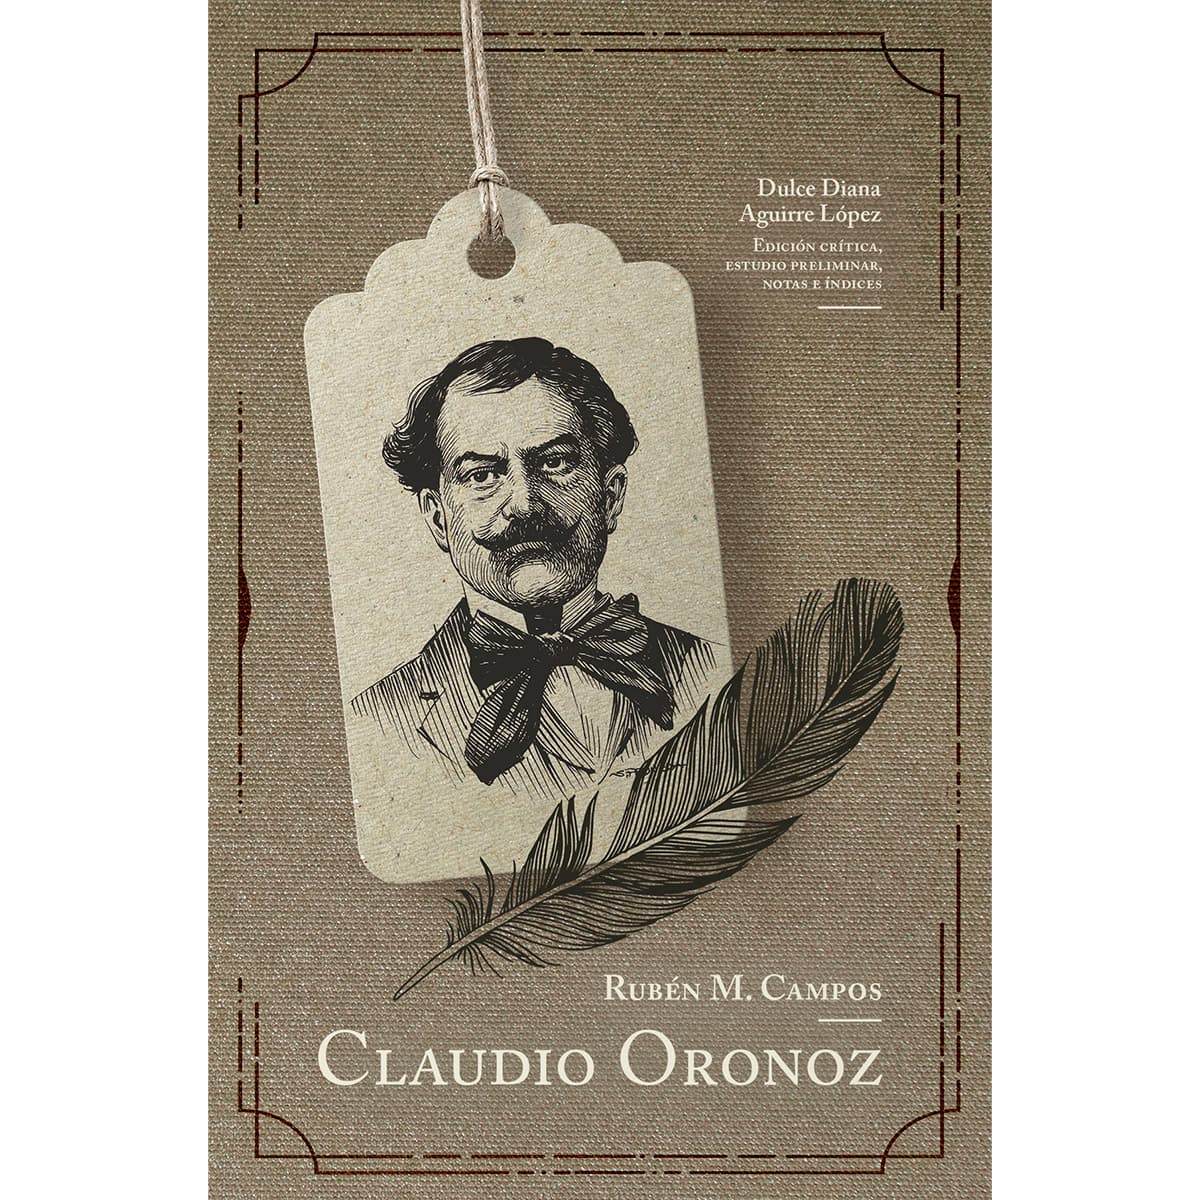 RUBÉN M. CAMPOS. CLAUDIO ORONOZ (1906) (RÚSTICA)